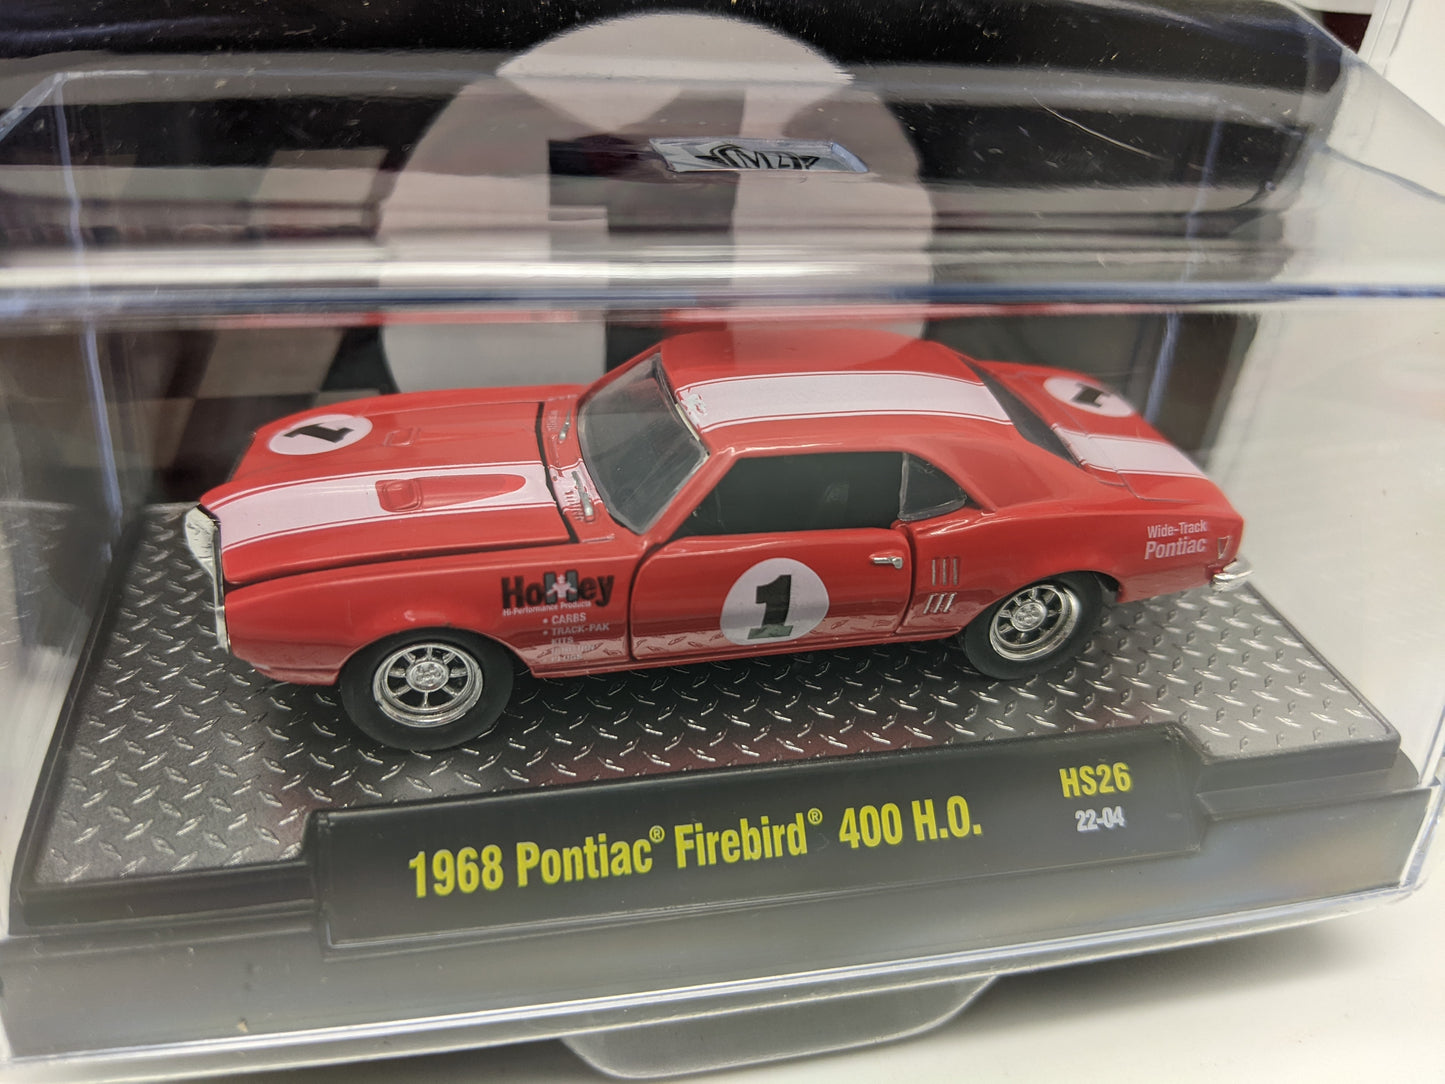 M2 1968 Pontiac Firebird 400 H.O. - Holley